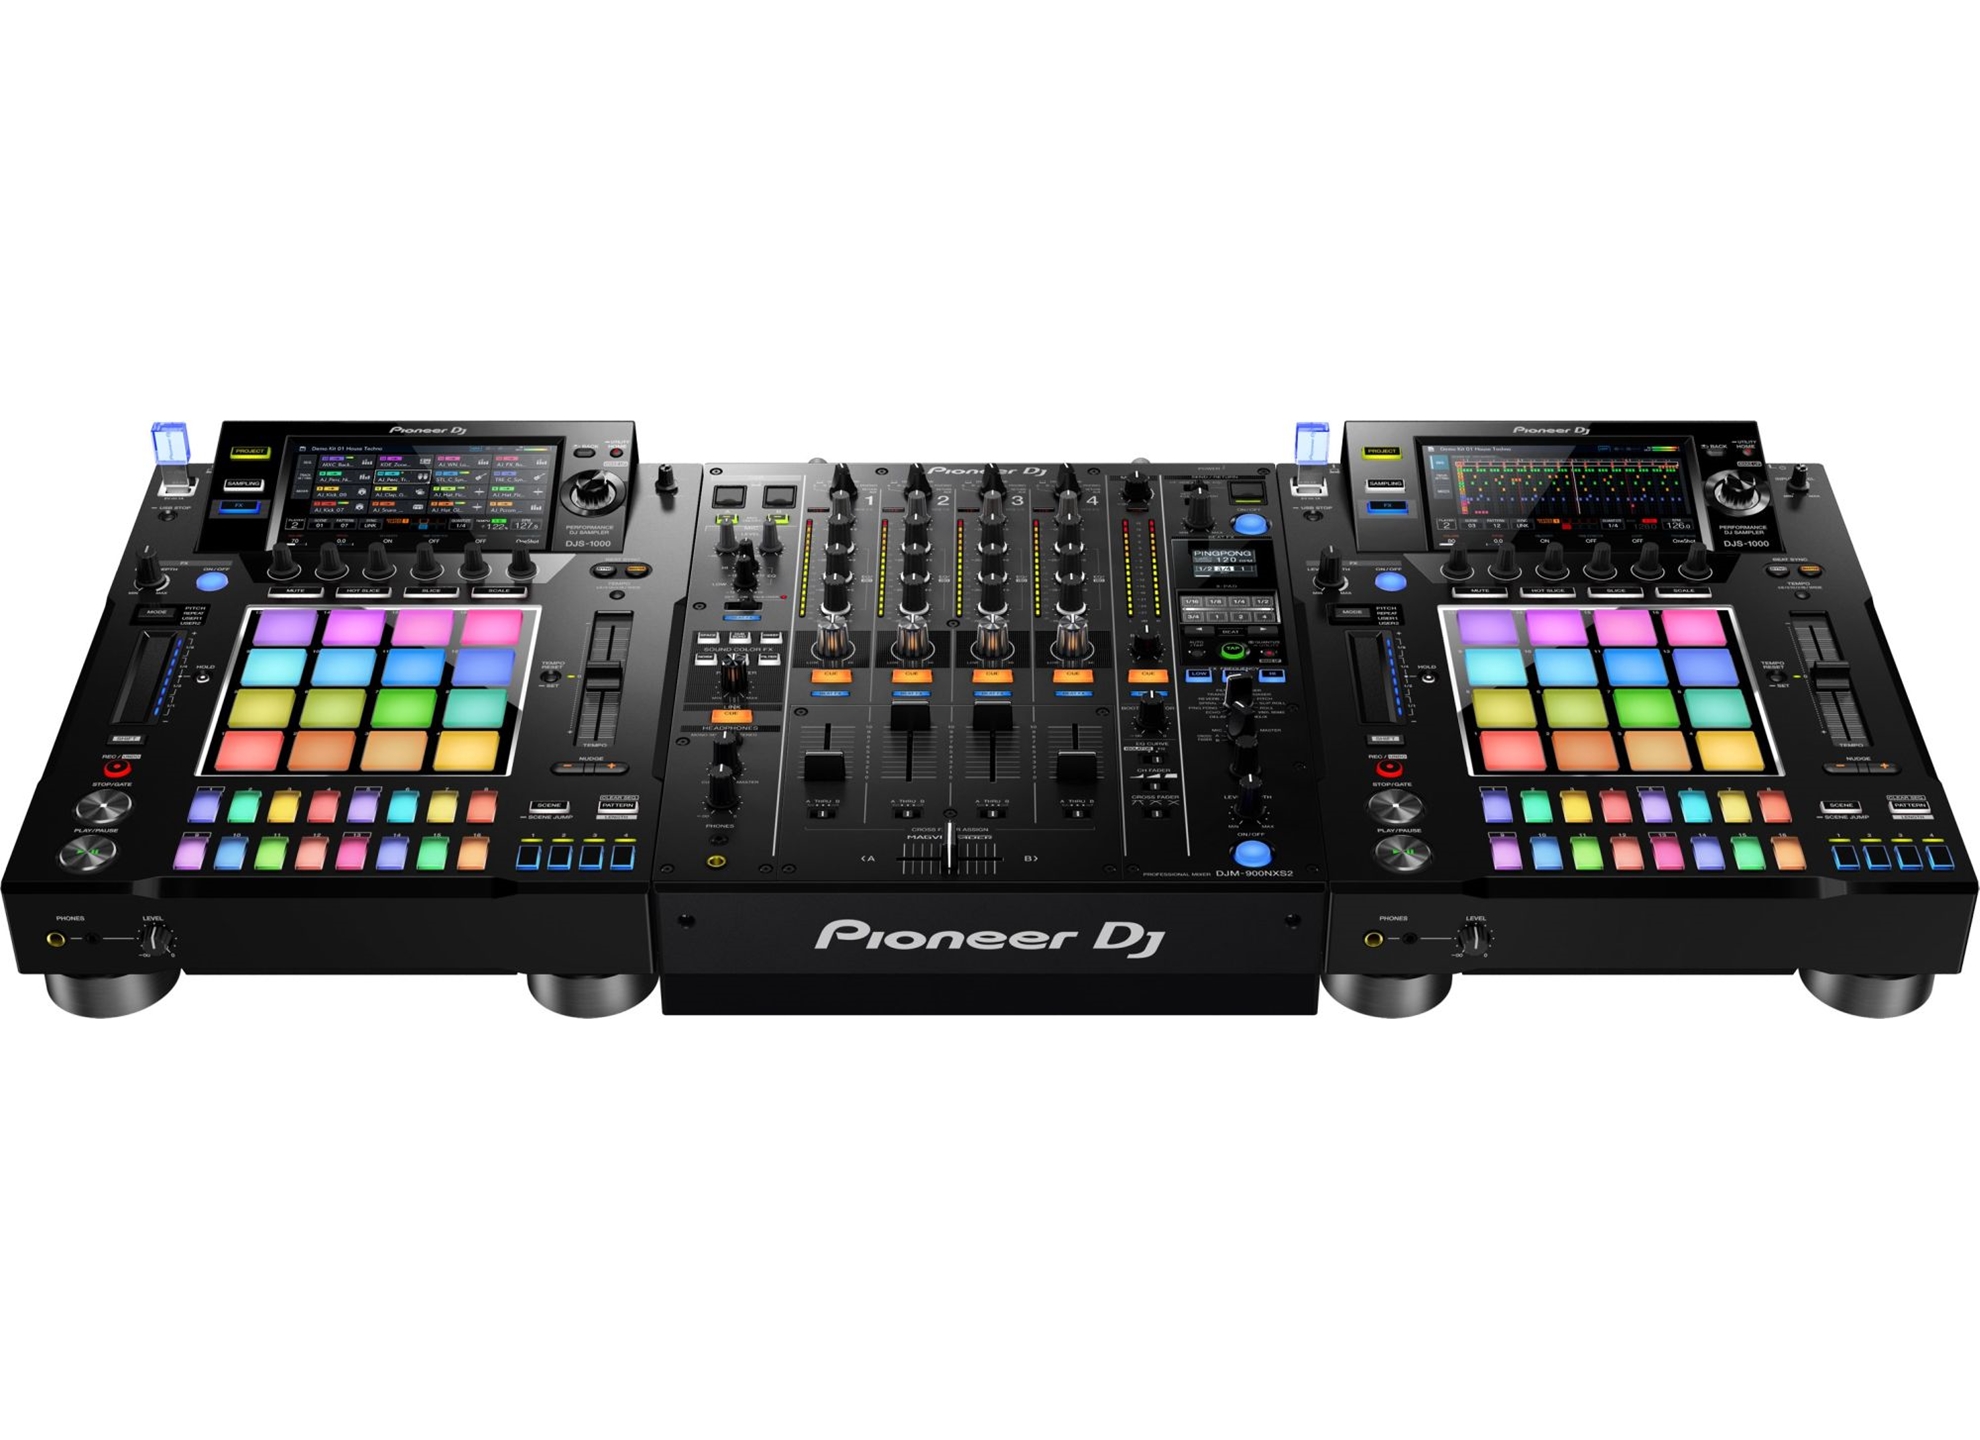 DJS-1000 - Platines DJ à plats - Energyson